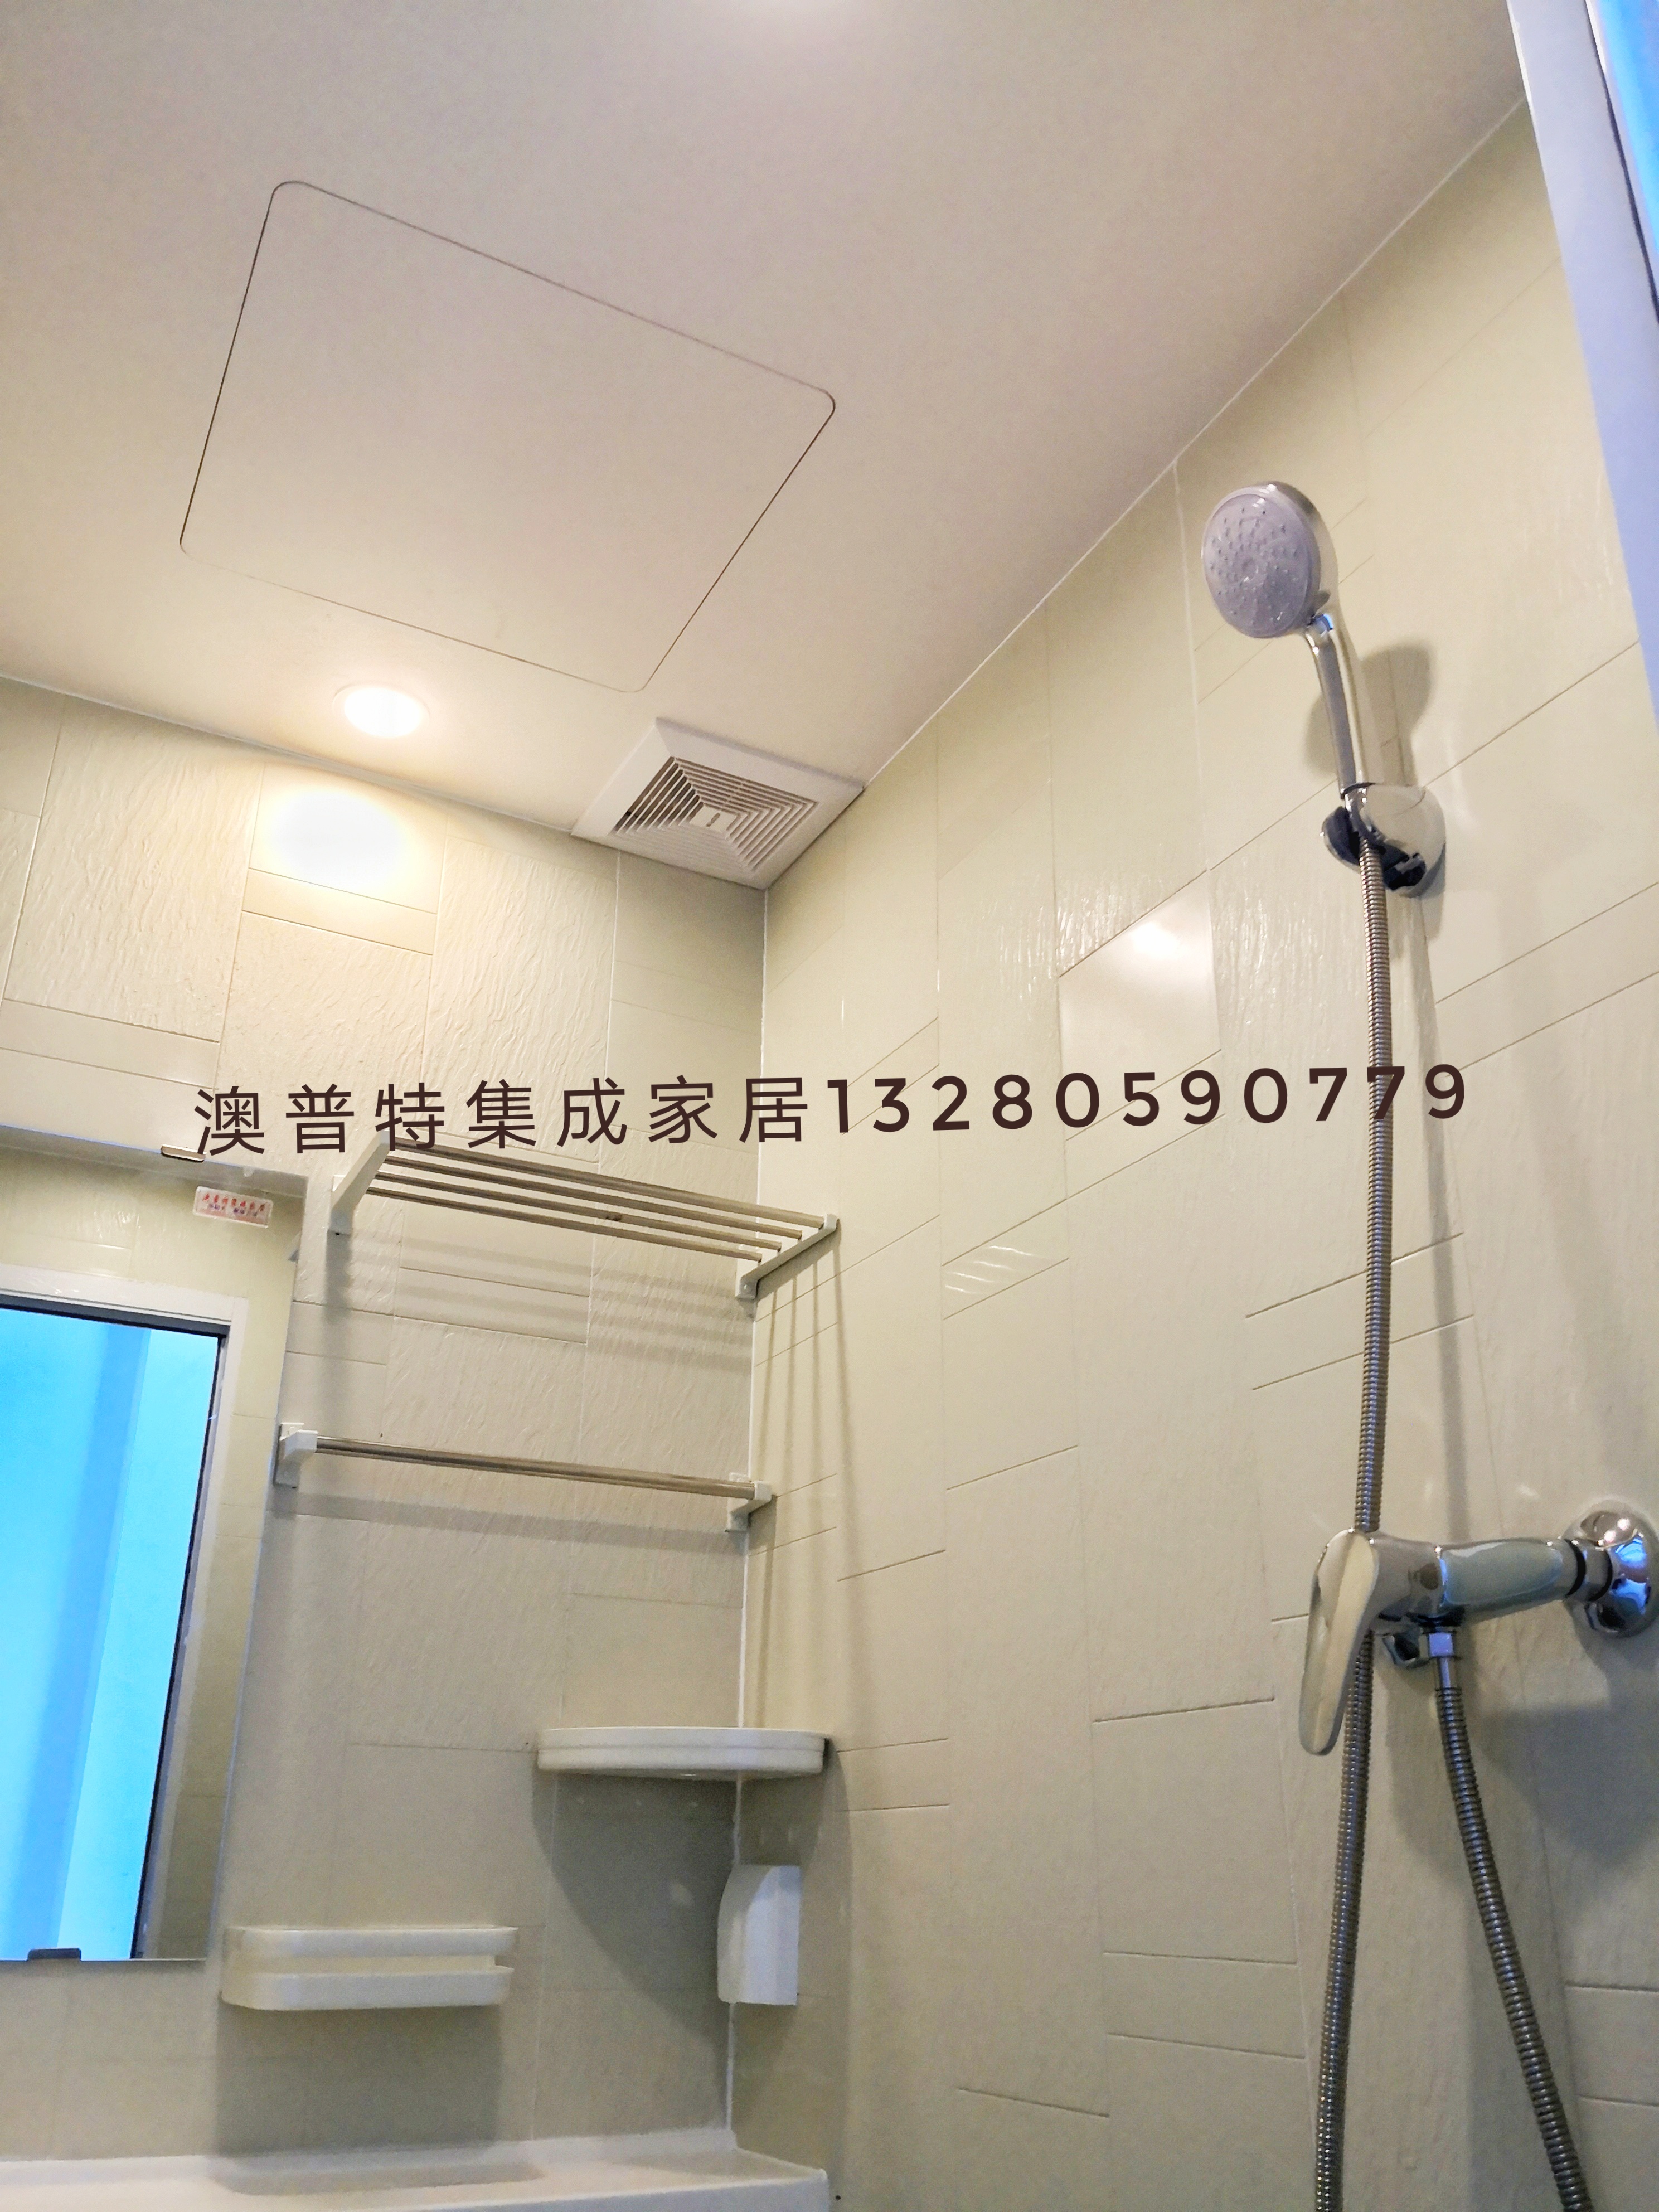 一体化卫生间 集成式整体卫生间 临沂澳普特集成家居 日式整体卫浴 生产厂家